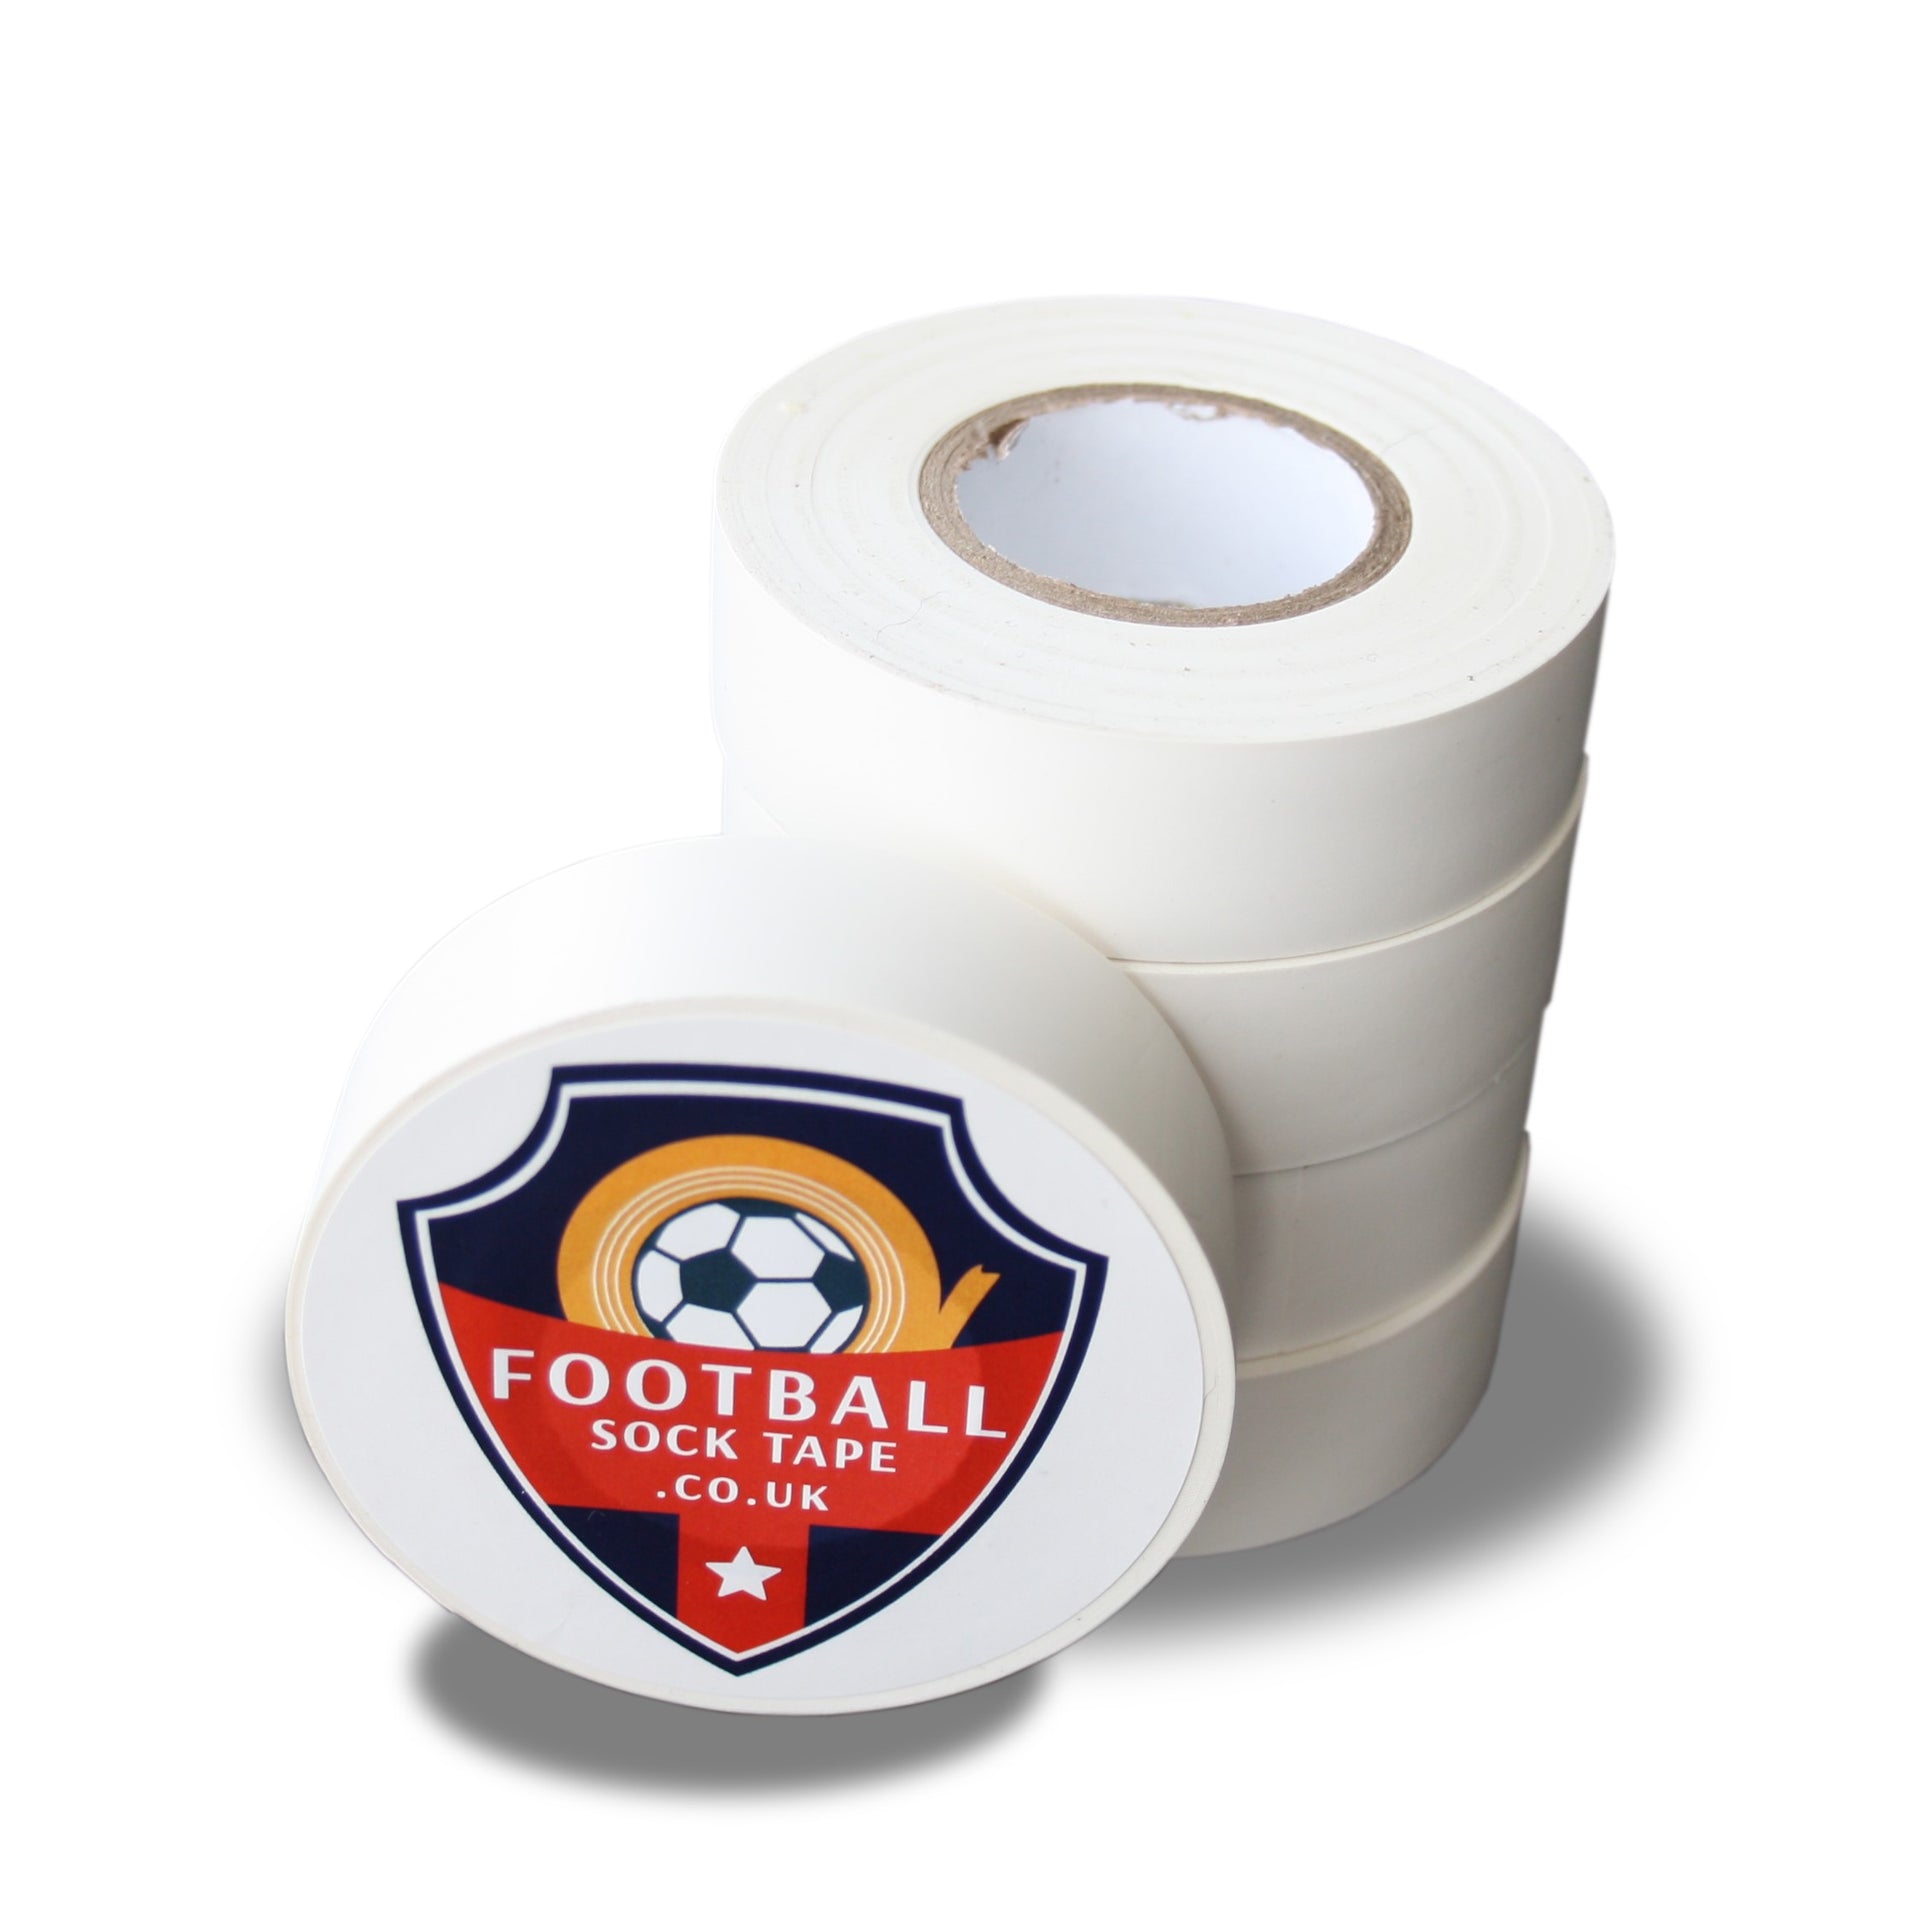 https://www.football-sock-tape.co.uk/cdn/shop/products/WhiteFootballSockTapeCropSQ.jpg?v=1605553917&width=1920